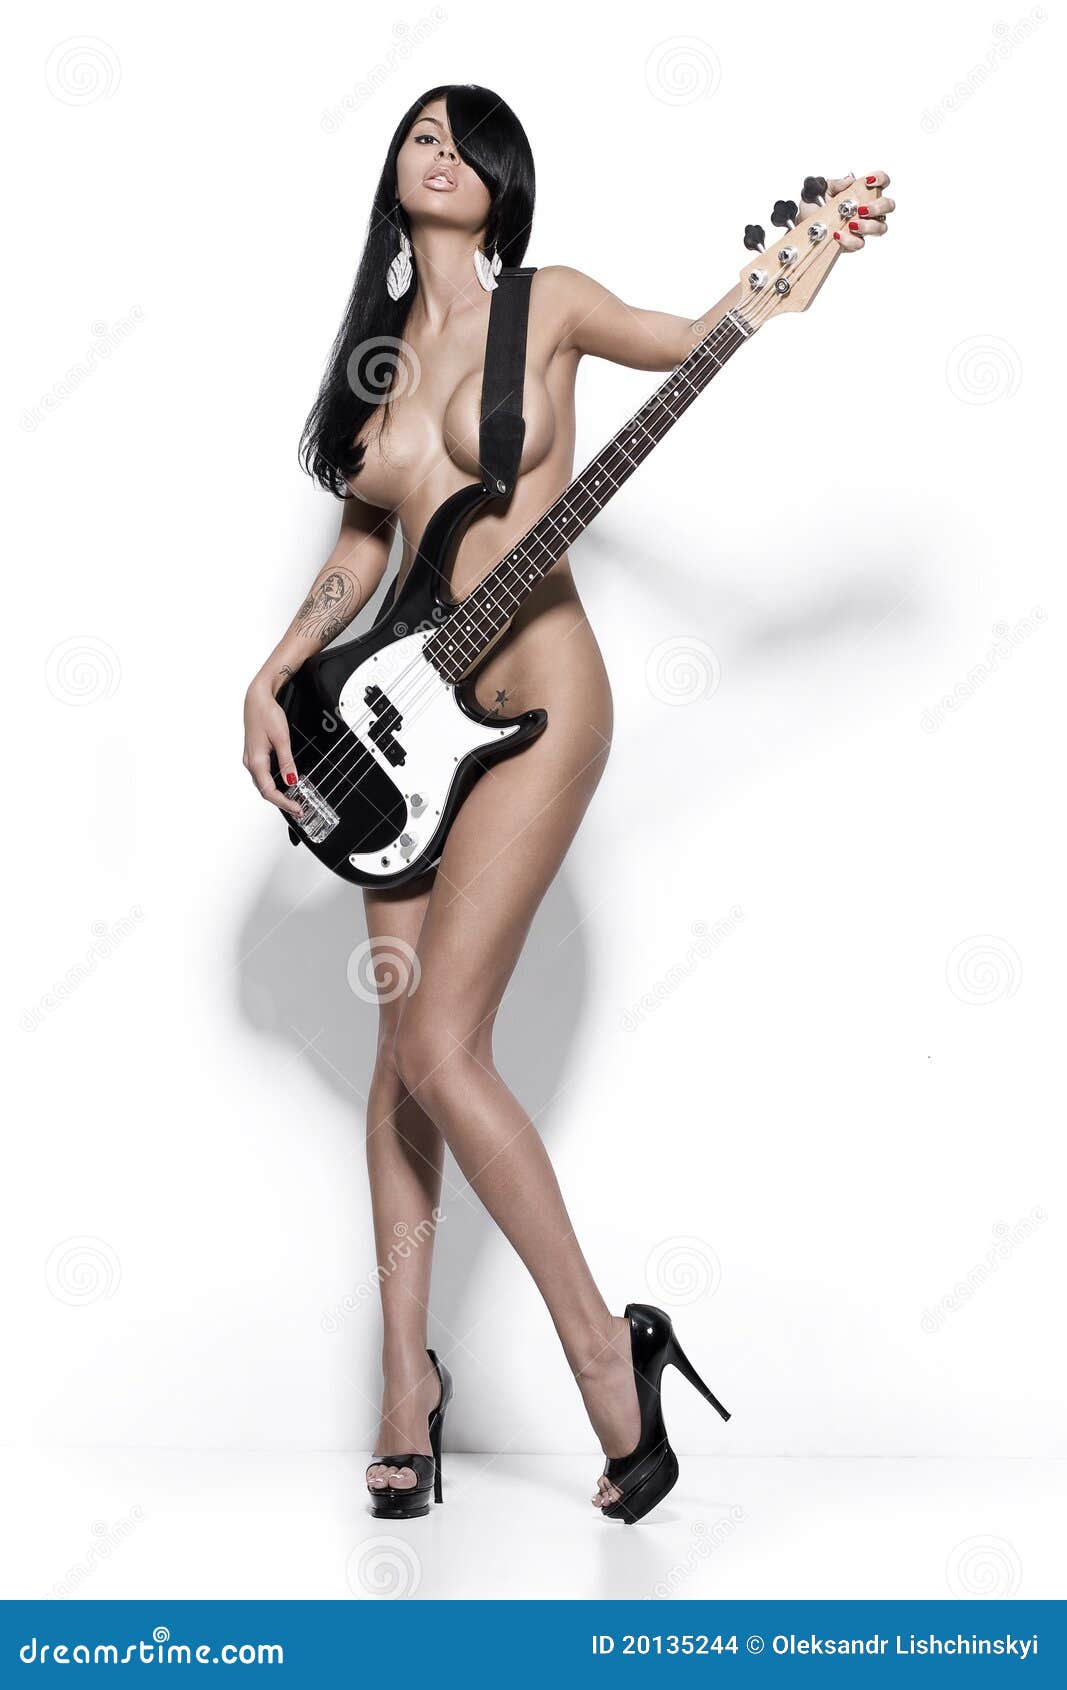 brenda mayhew add photo nude girl with guitar